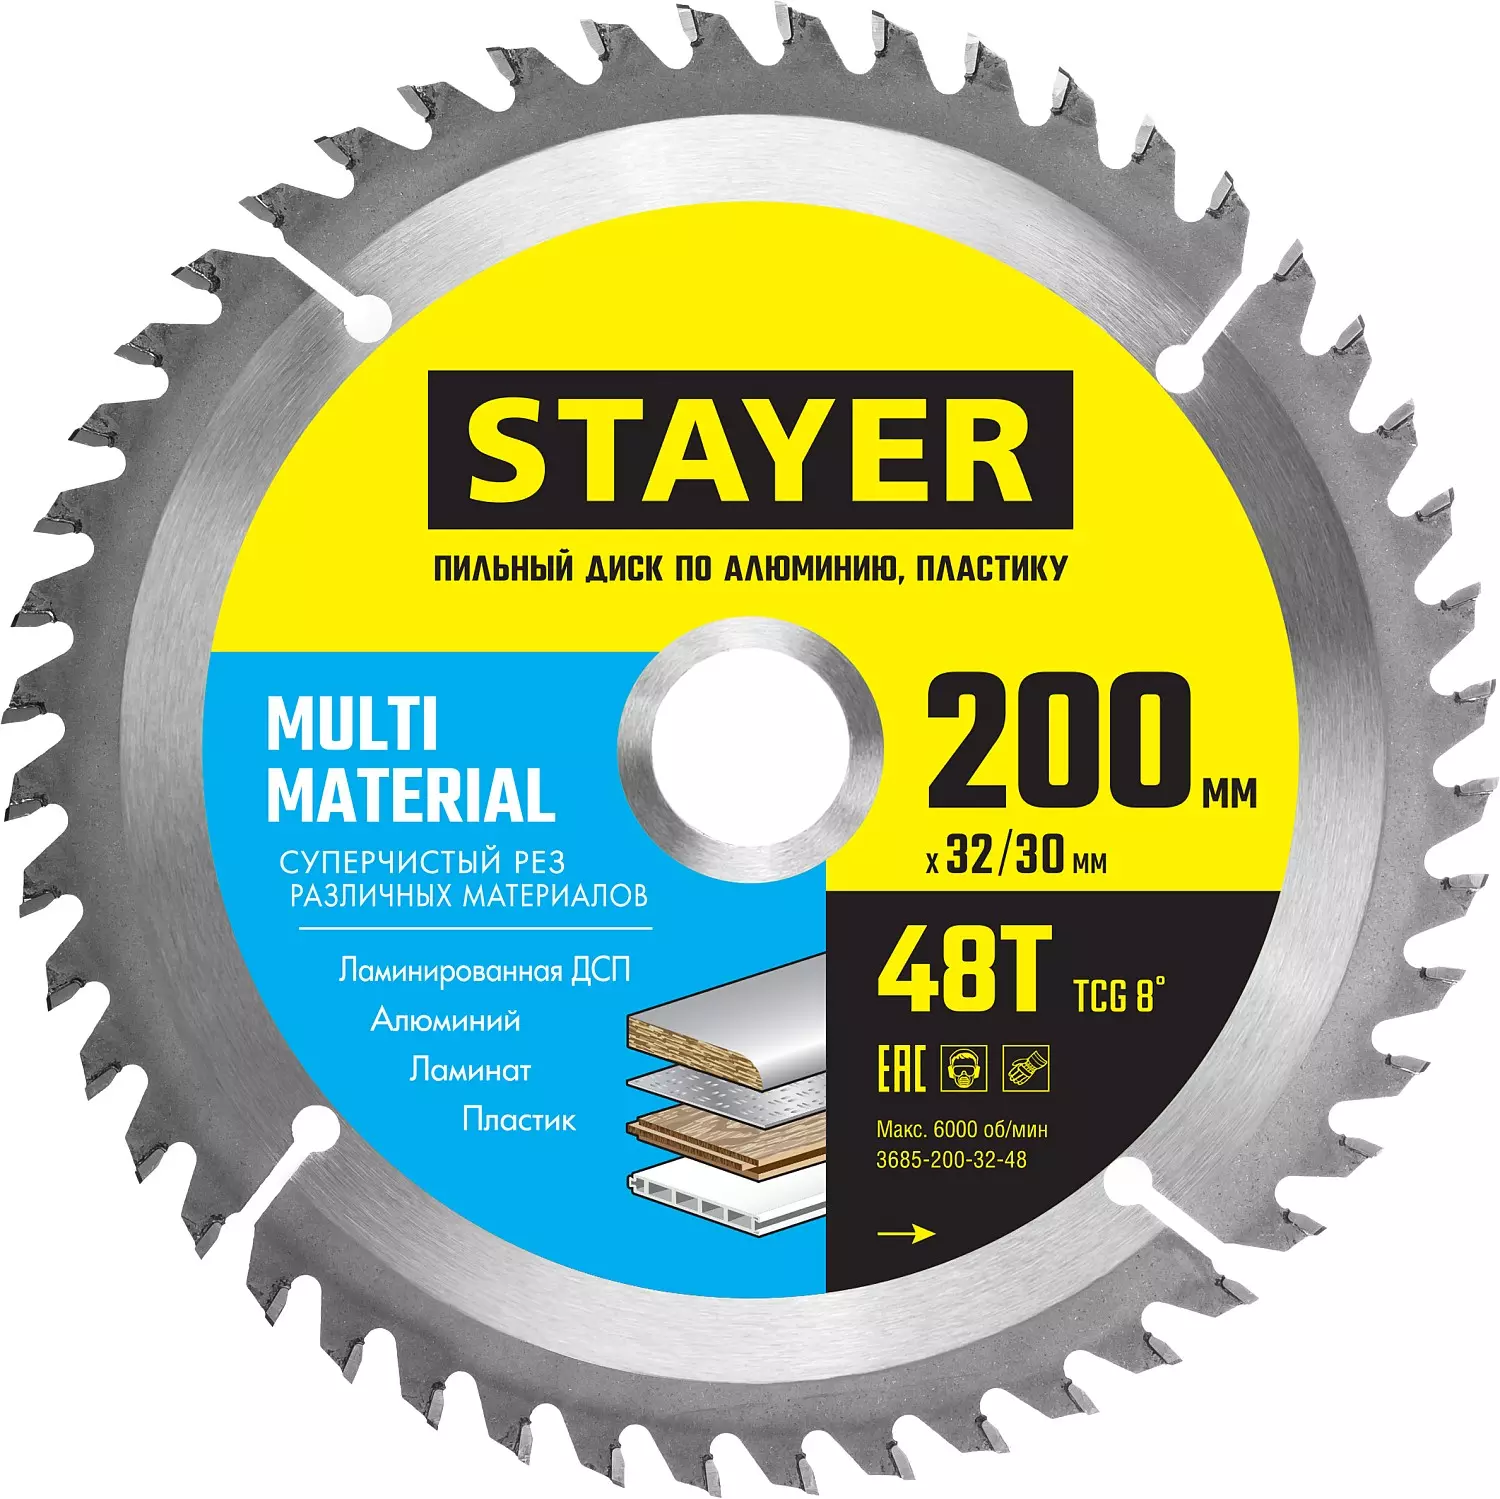 Пильный диск STAYER Multi Material, ⌀20 см x 3 см алюминий и пластик, чистый рез, 48Т, 1 шт. (3685-200-32-48)